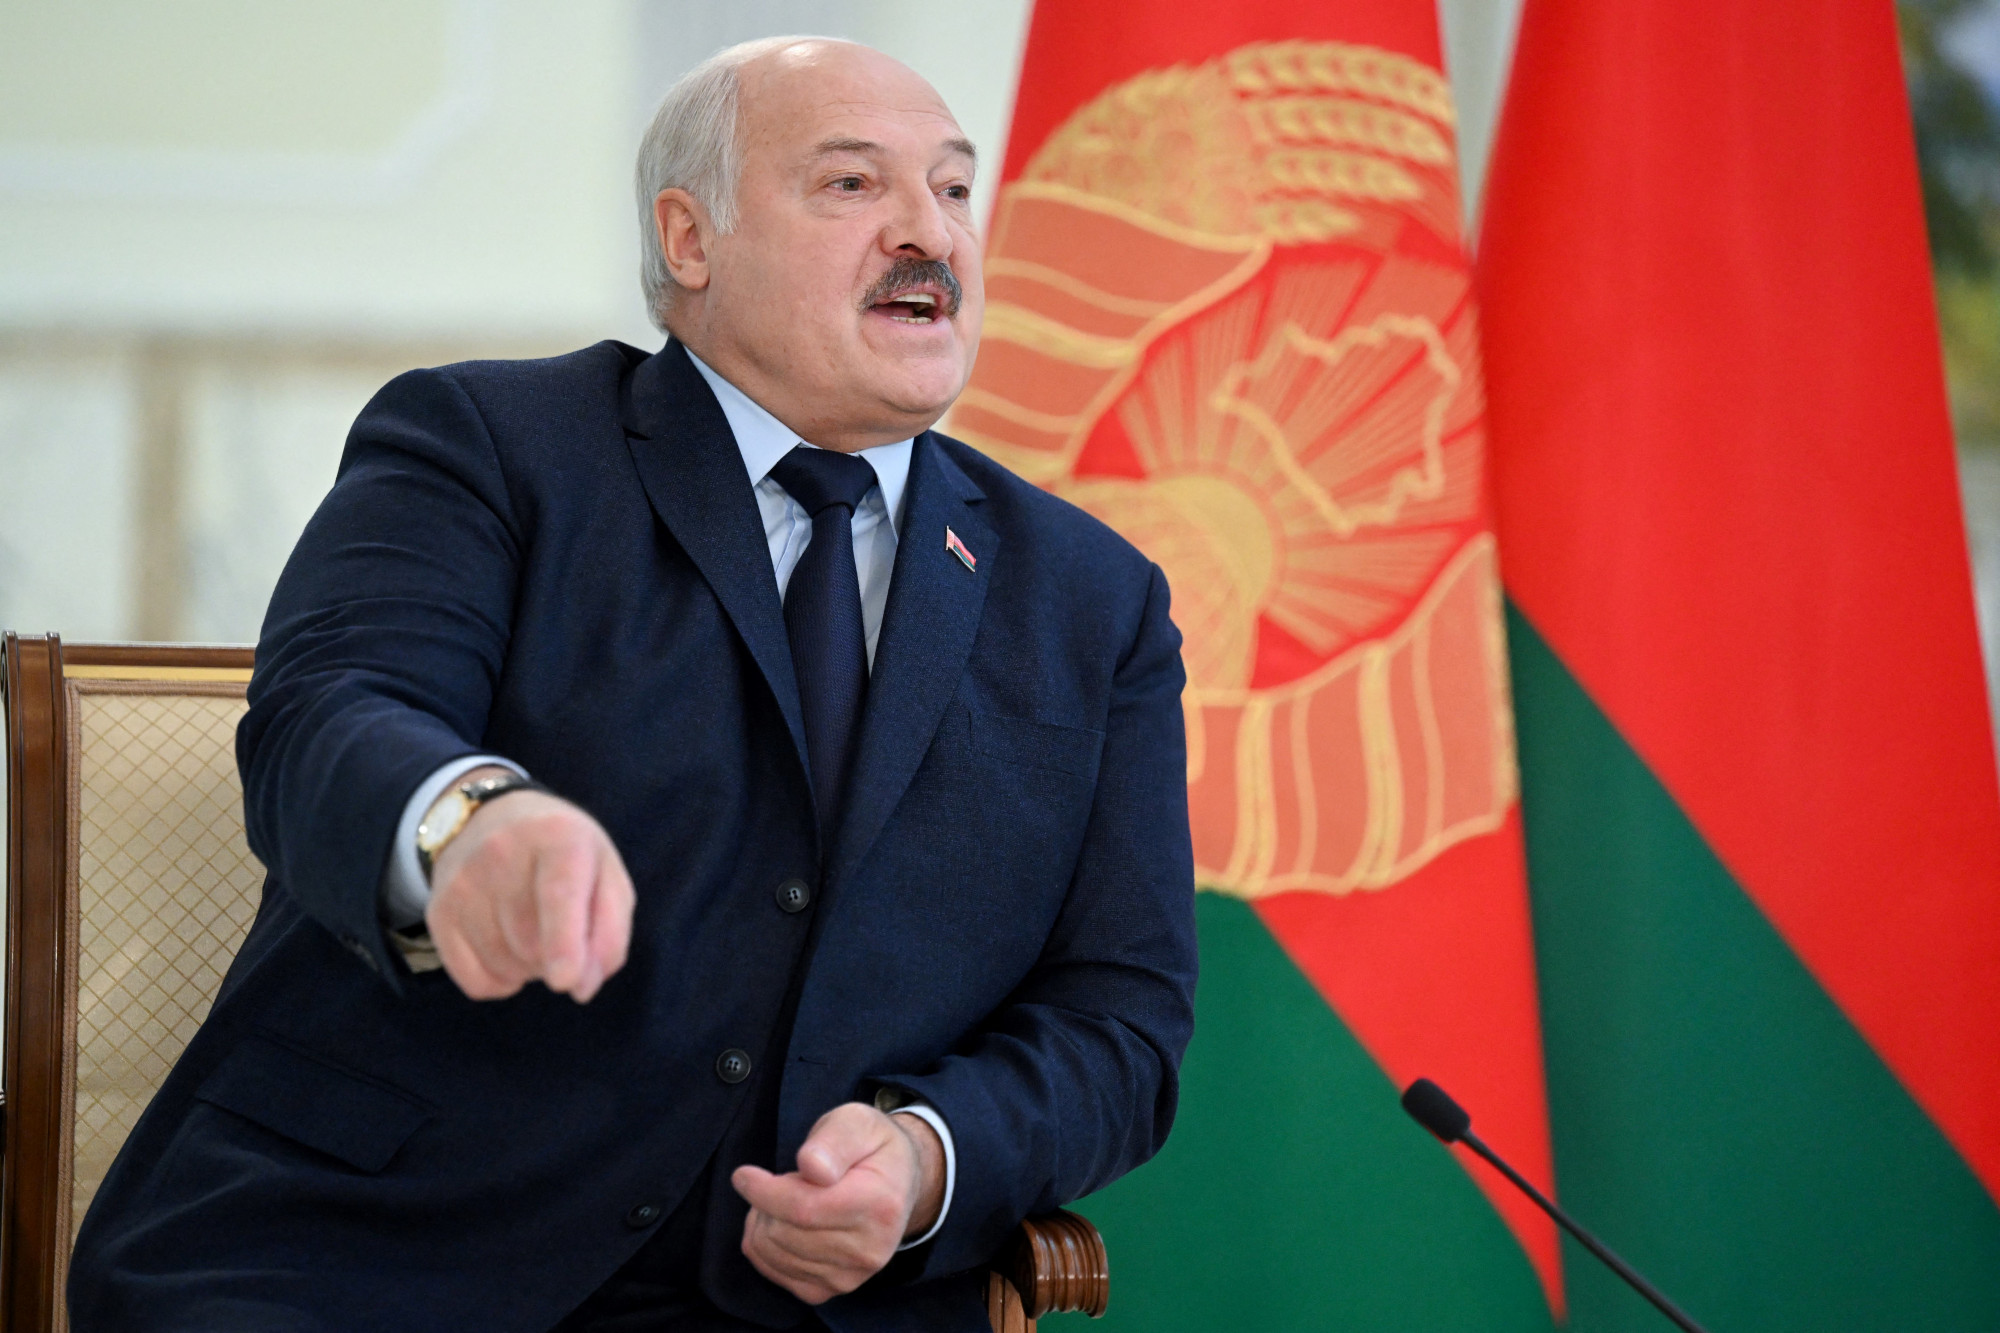 Lukasenka nem ment el a nemzeti lobogó ünnepére, valószínű, hogy vírusos betegséggel küszködik